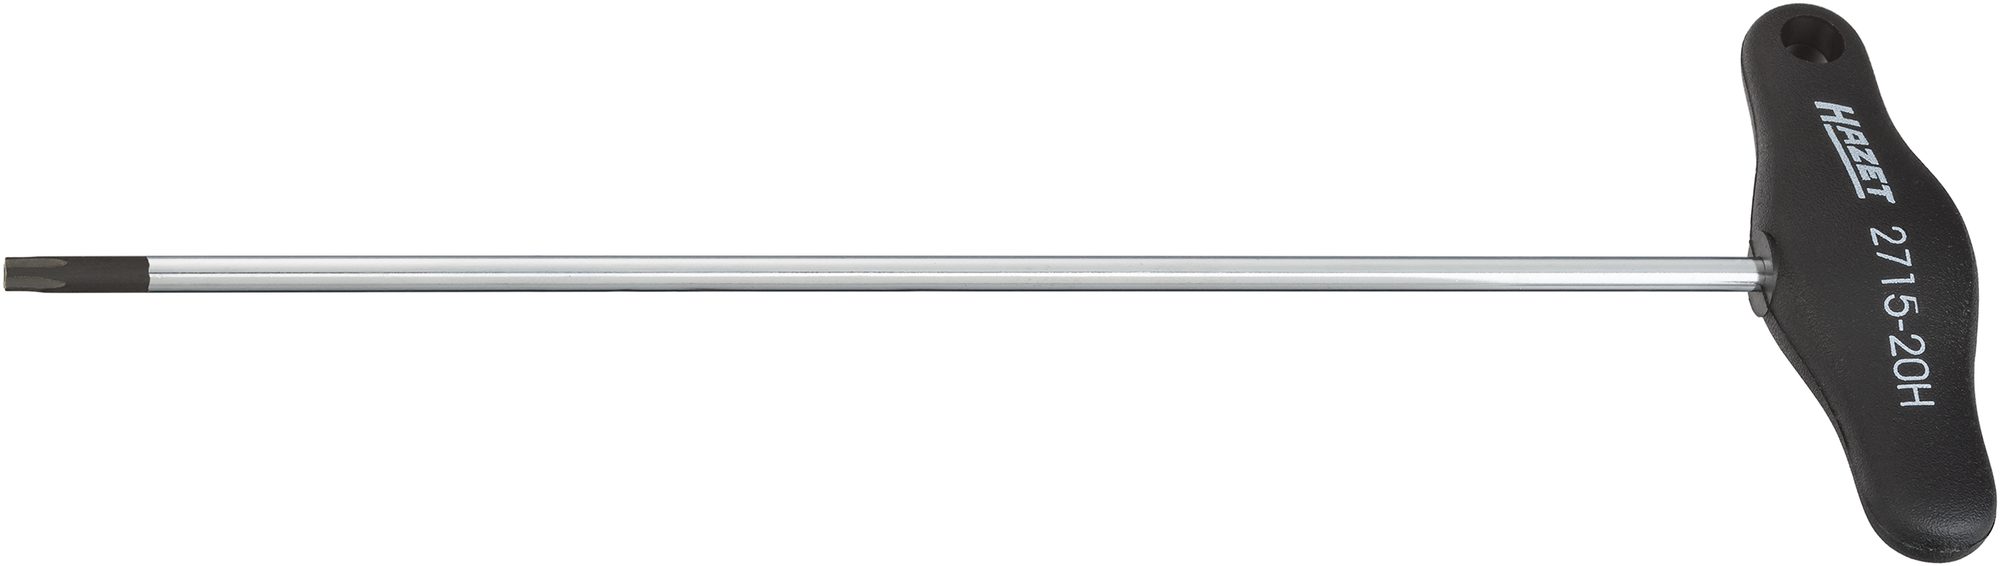 HAZET Außenspiegel-Montagewerkzeug Innen-5-Stern Profil mit Zapfen, Schraubendreher mit T-Griff, Schraubendreher, Handwerkzeuge, Werkzeuge